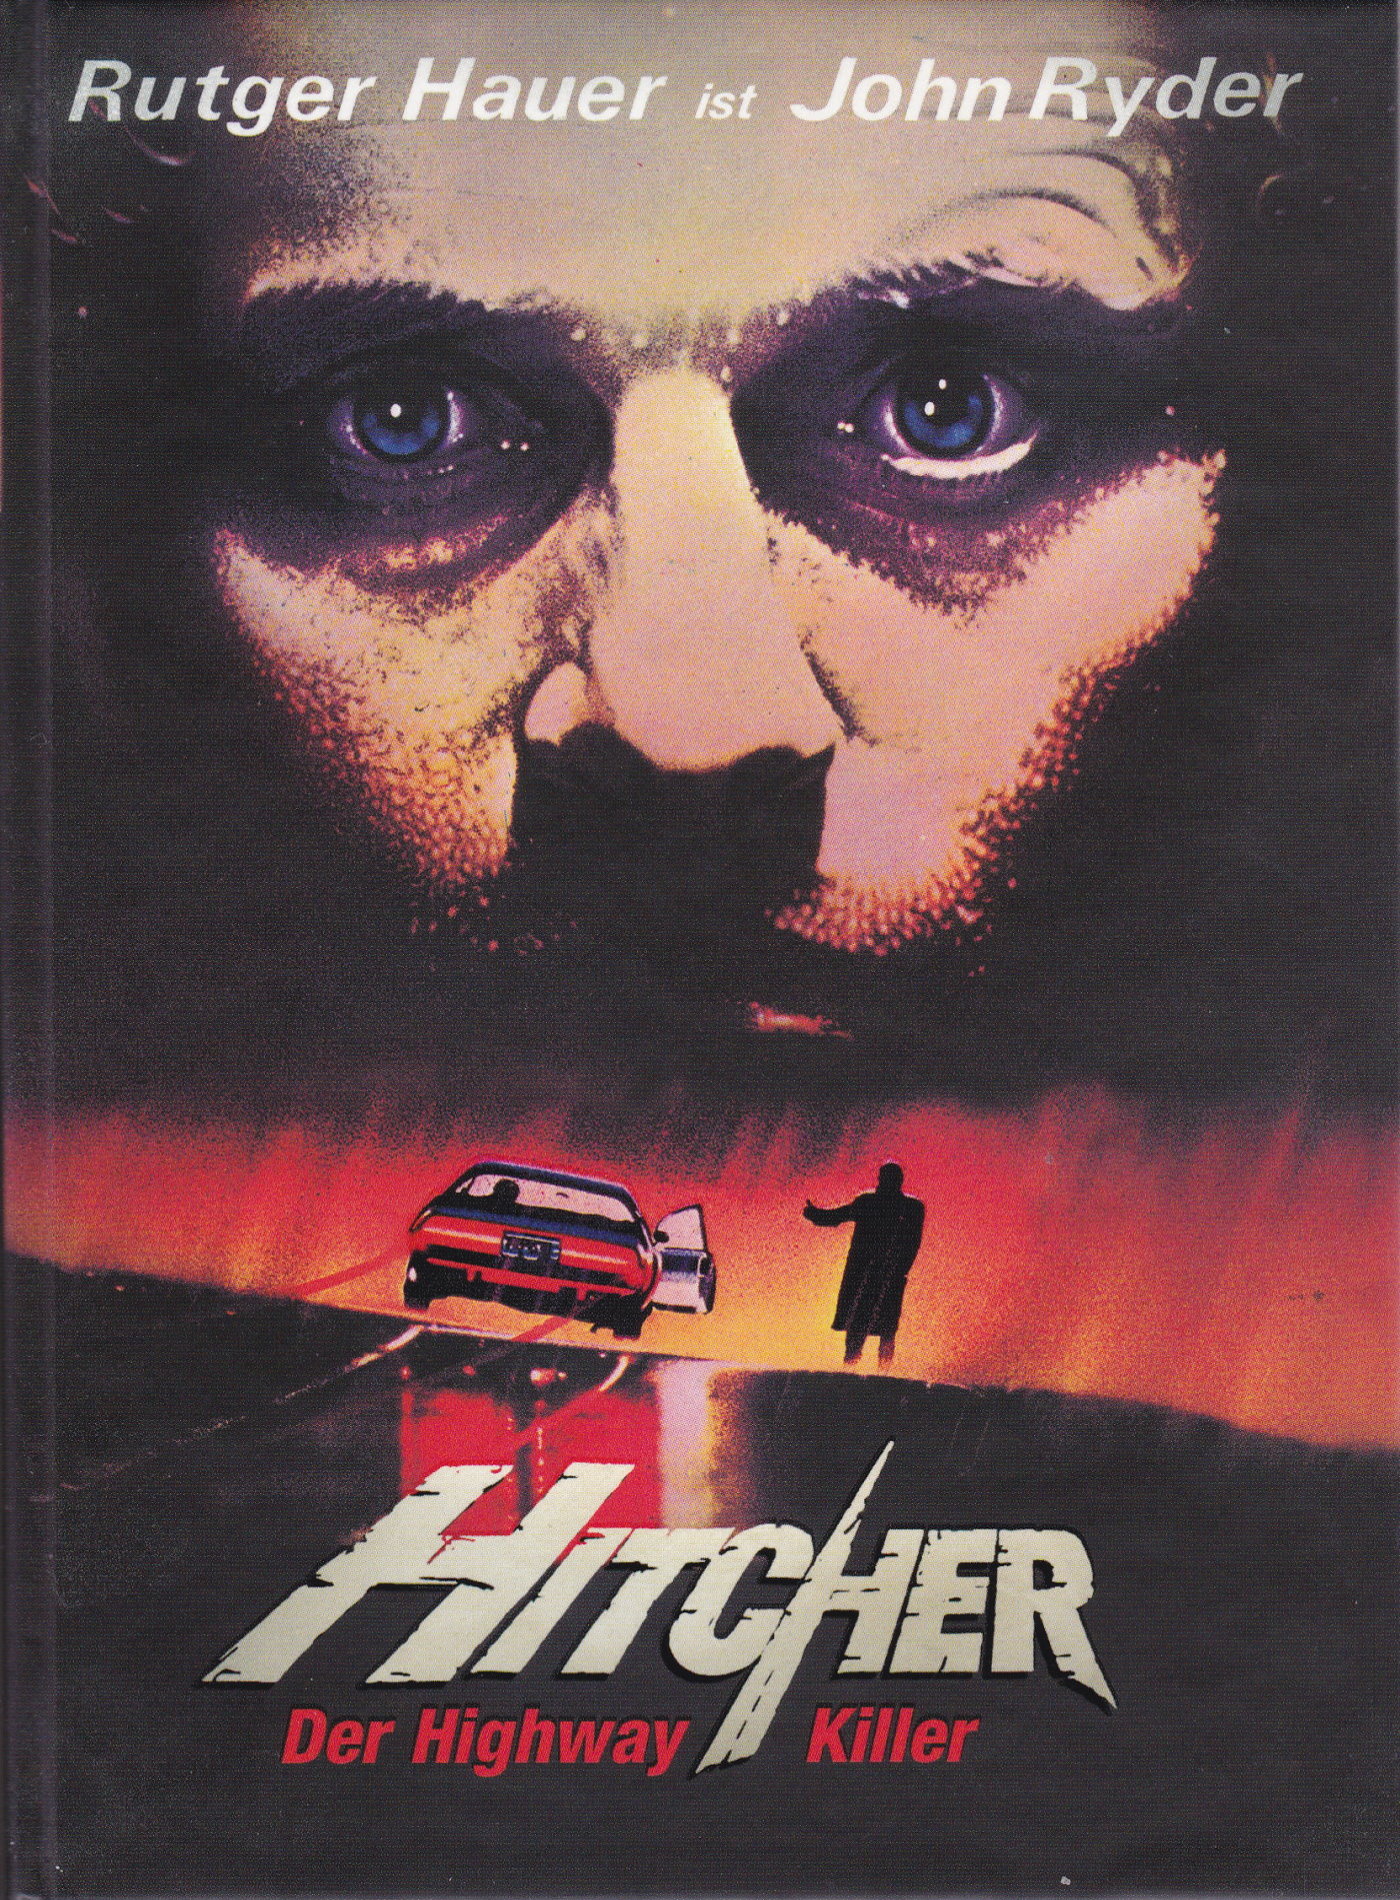 Cover - Hitcher, der Highway Killer.jpg